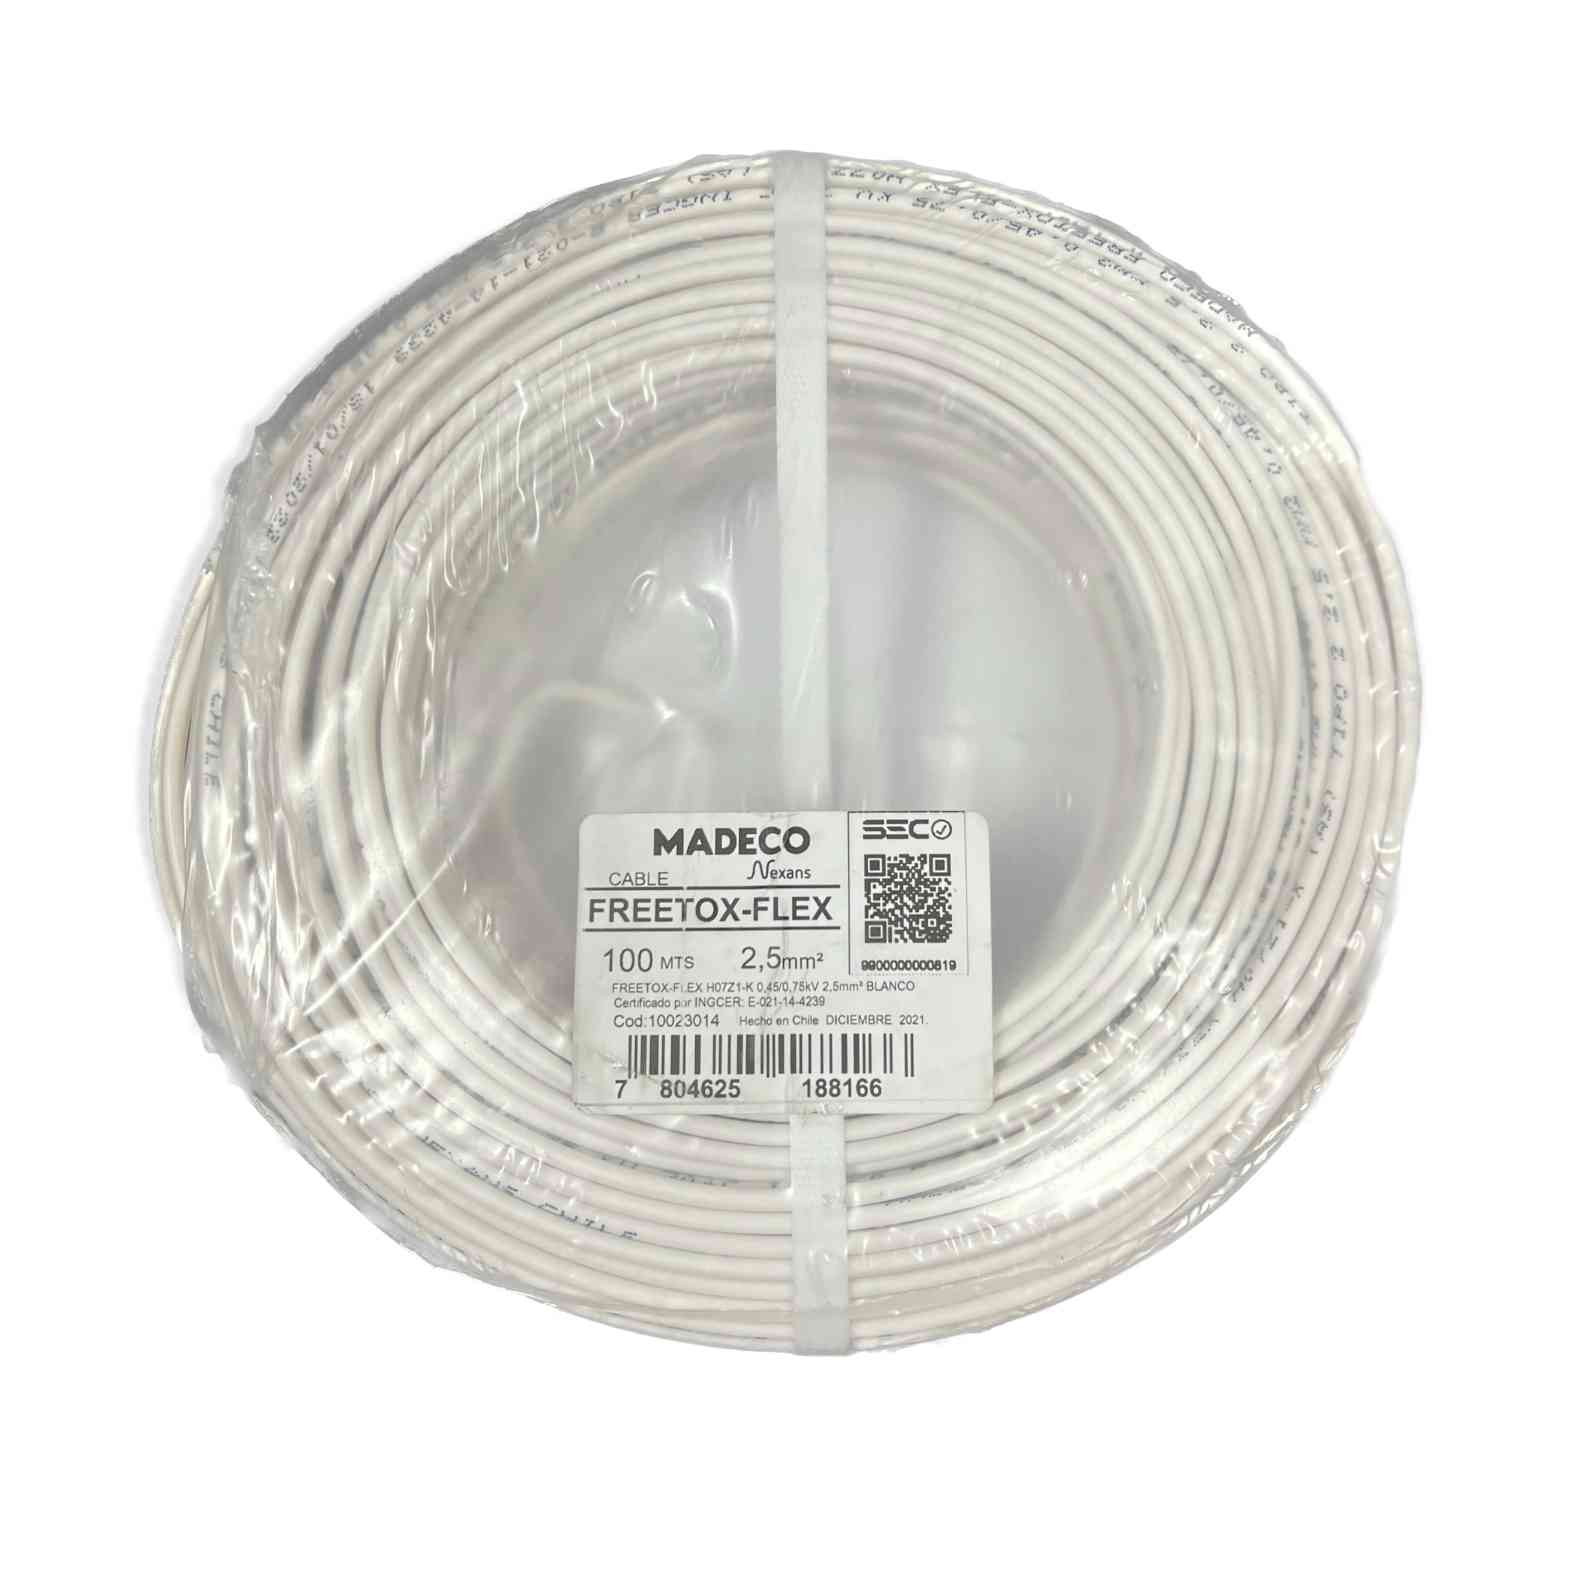 Cable Libre de Halógeno (H07Z1-K) 2,5mm2 BLANCO (100mt) SKU: 20756538